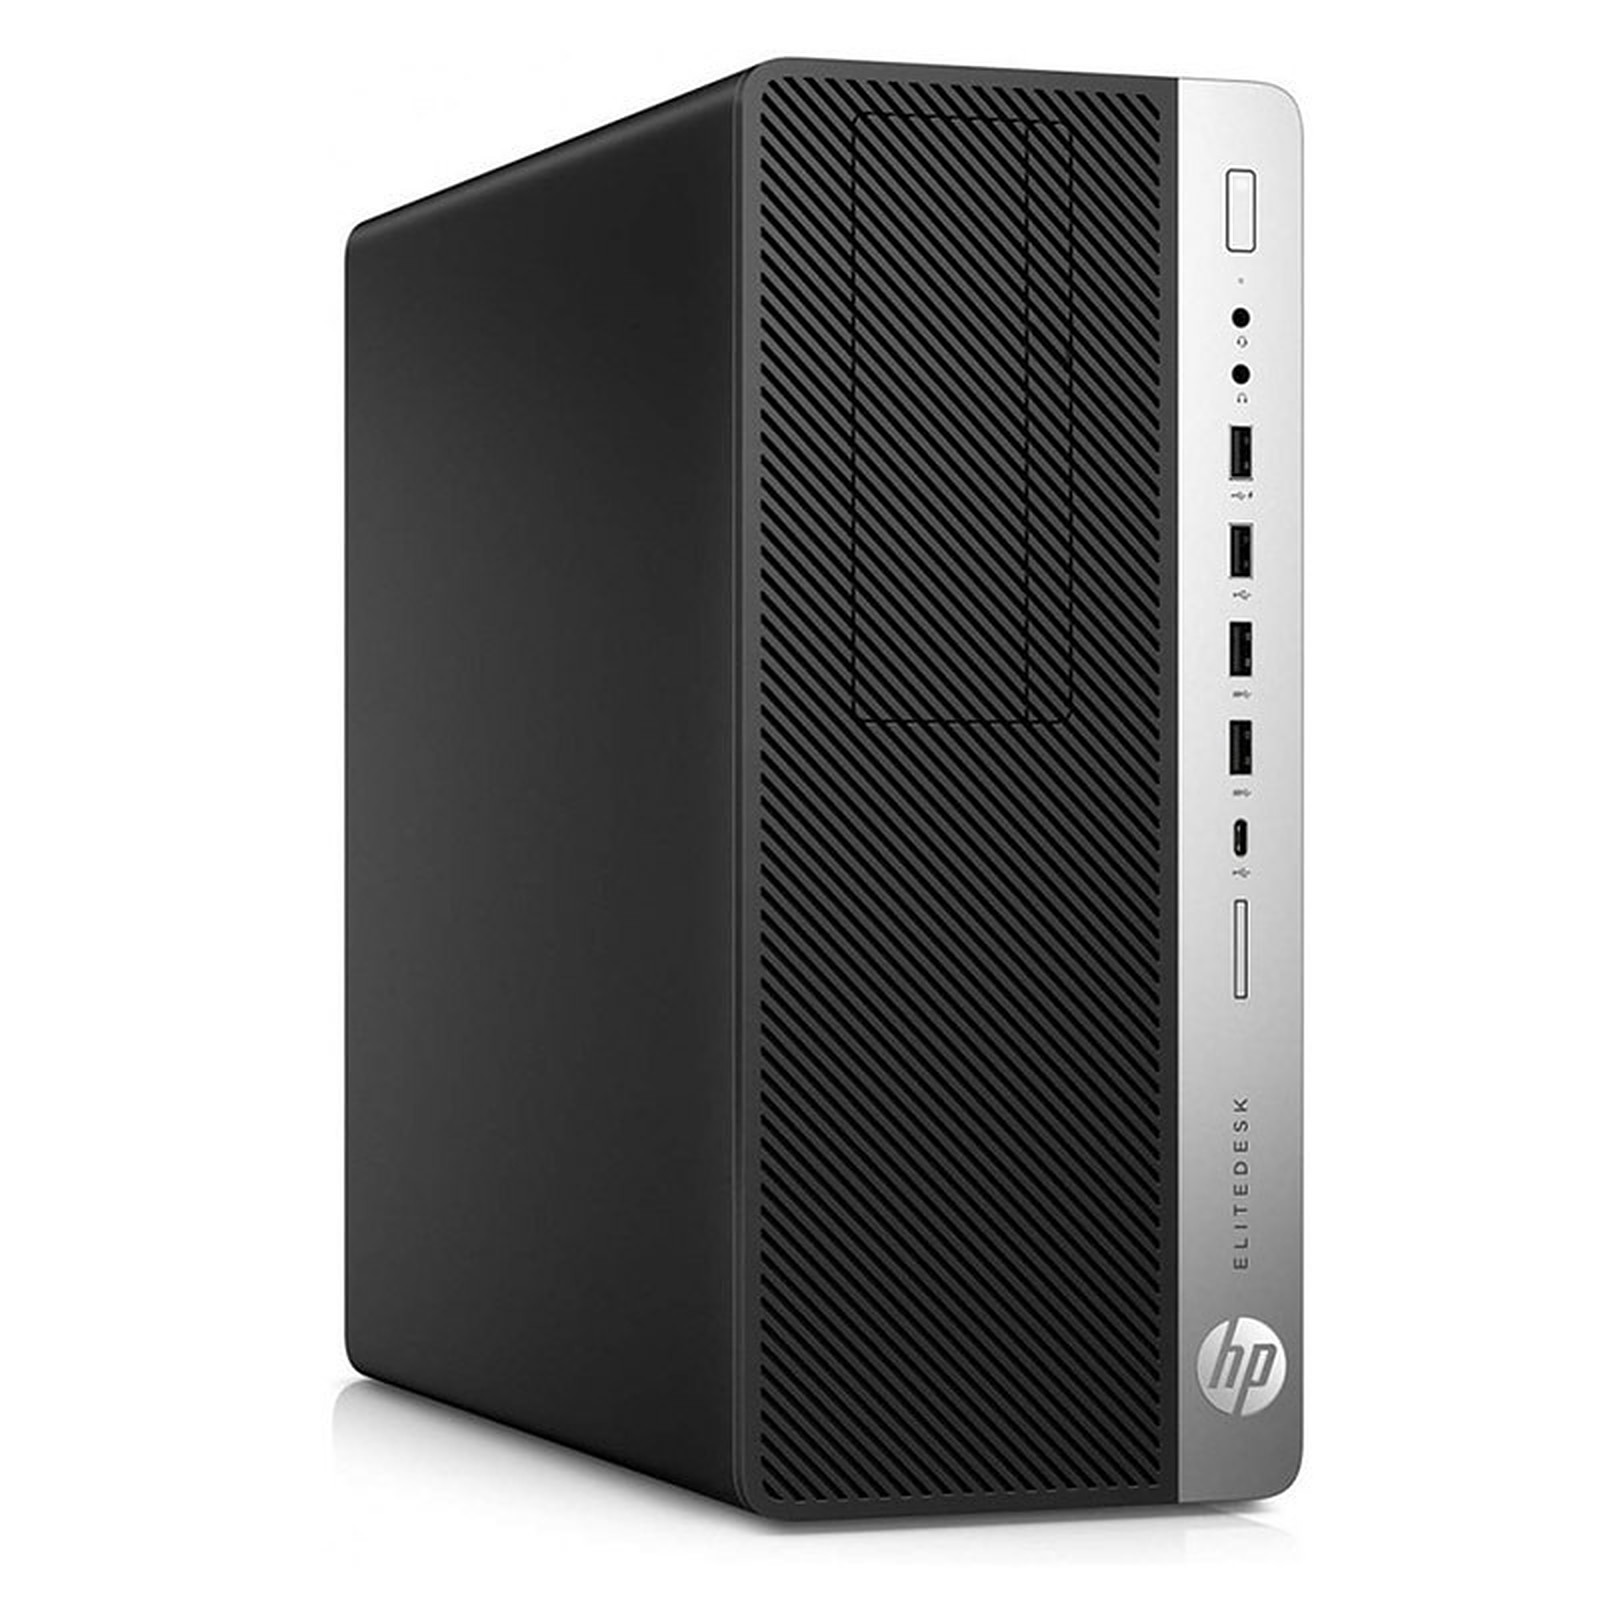 HP LPG-800G3 (I56581S) · Reconditionne - PC de bureau reconditionne HP